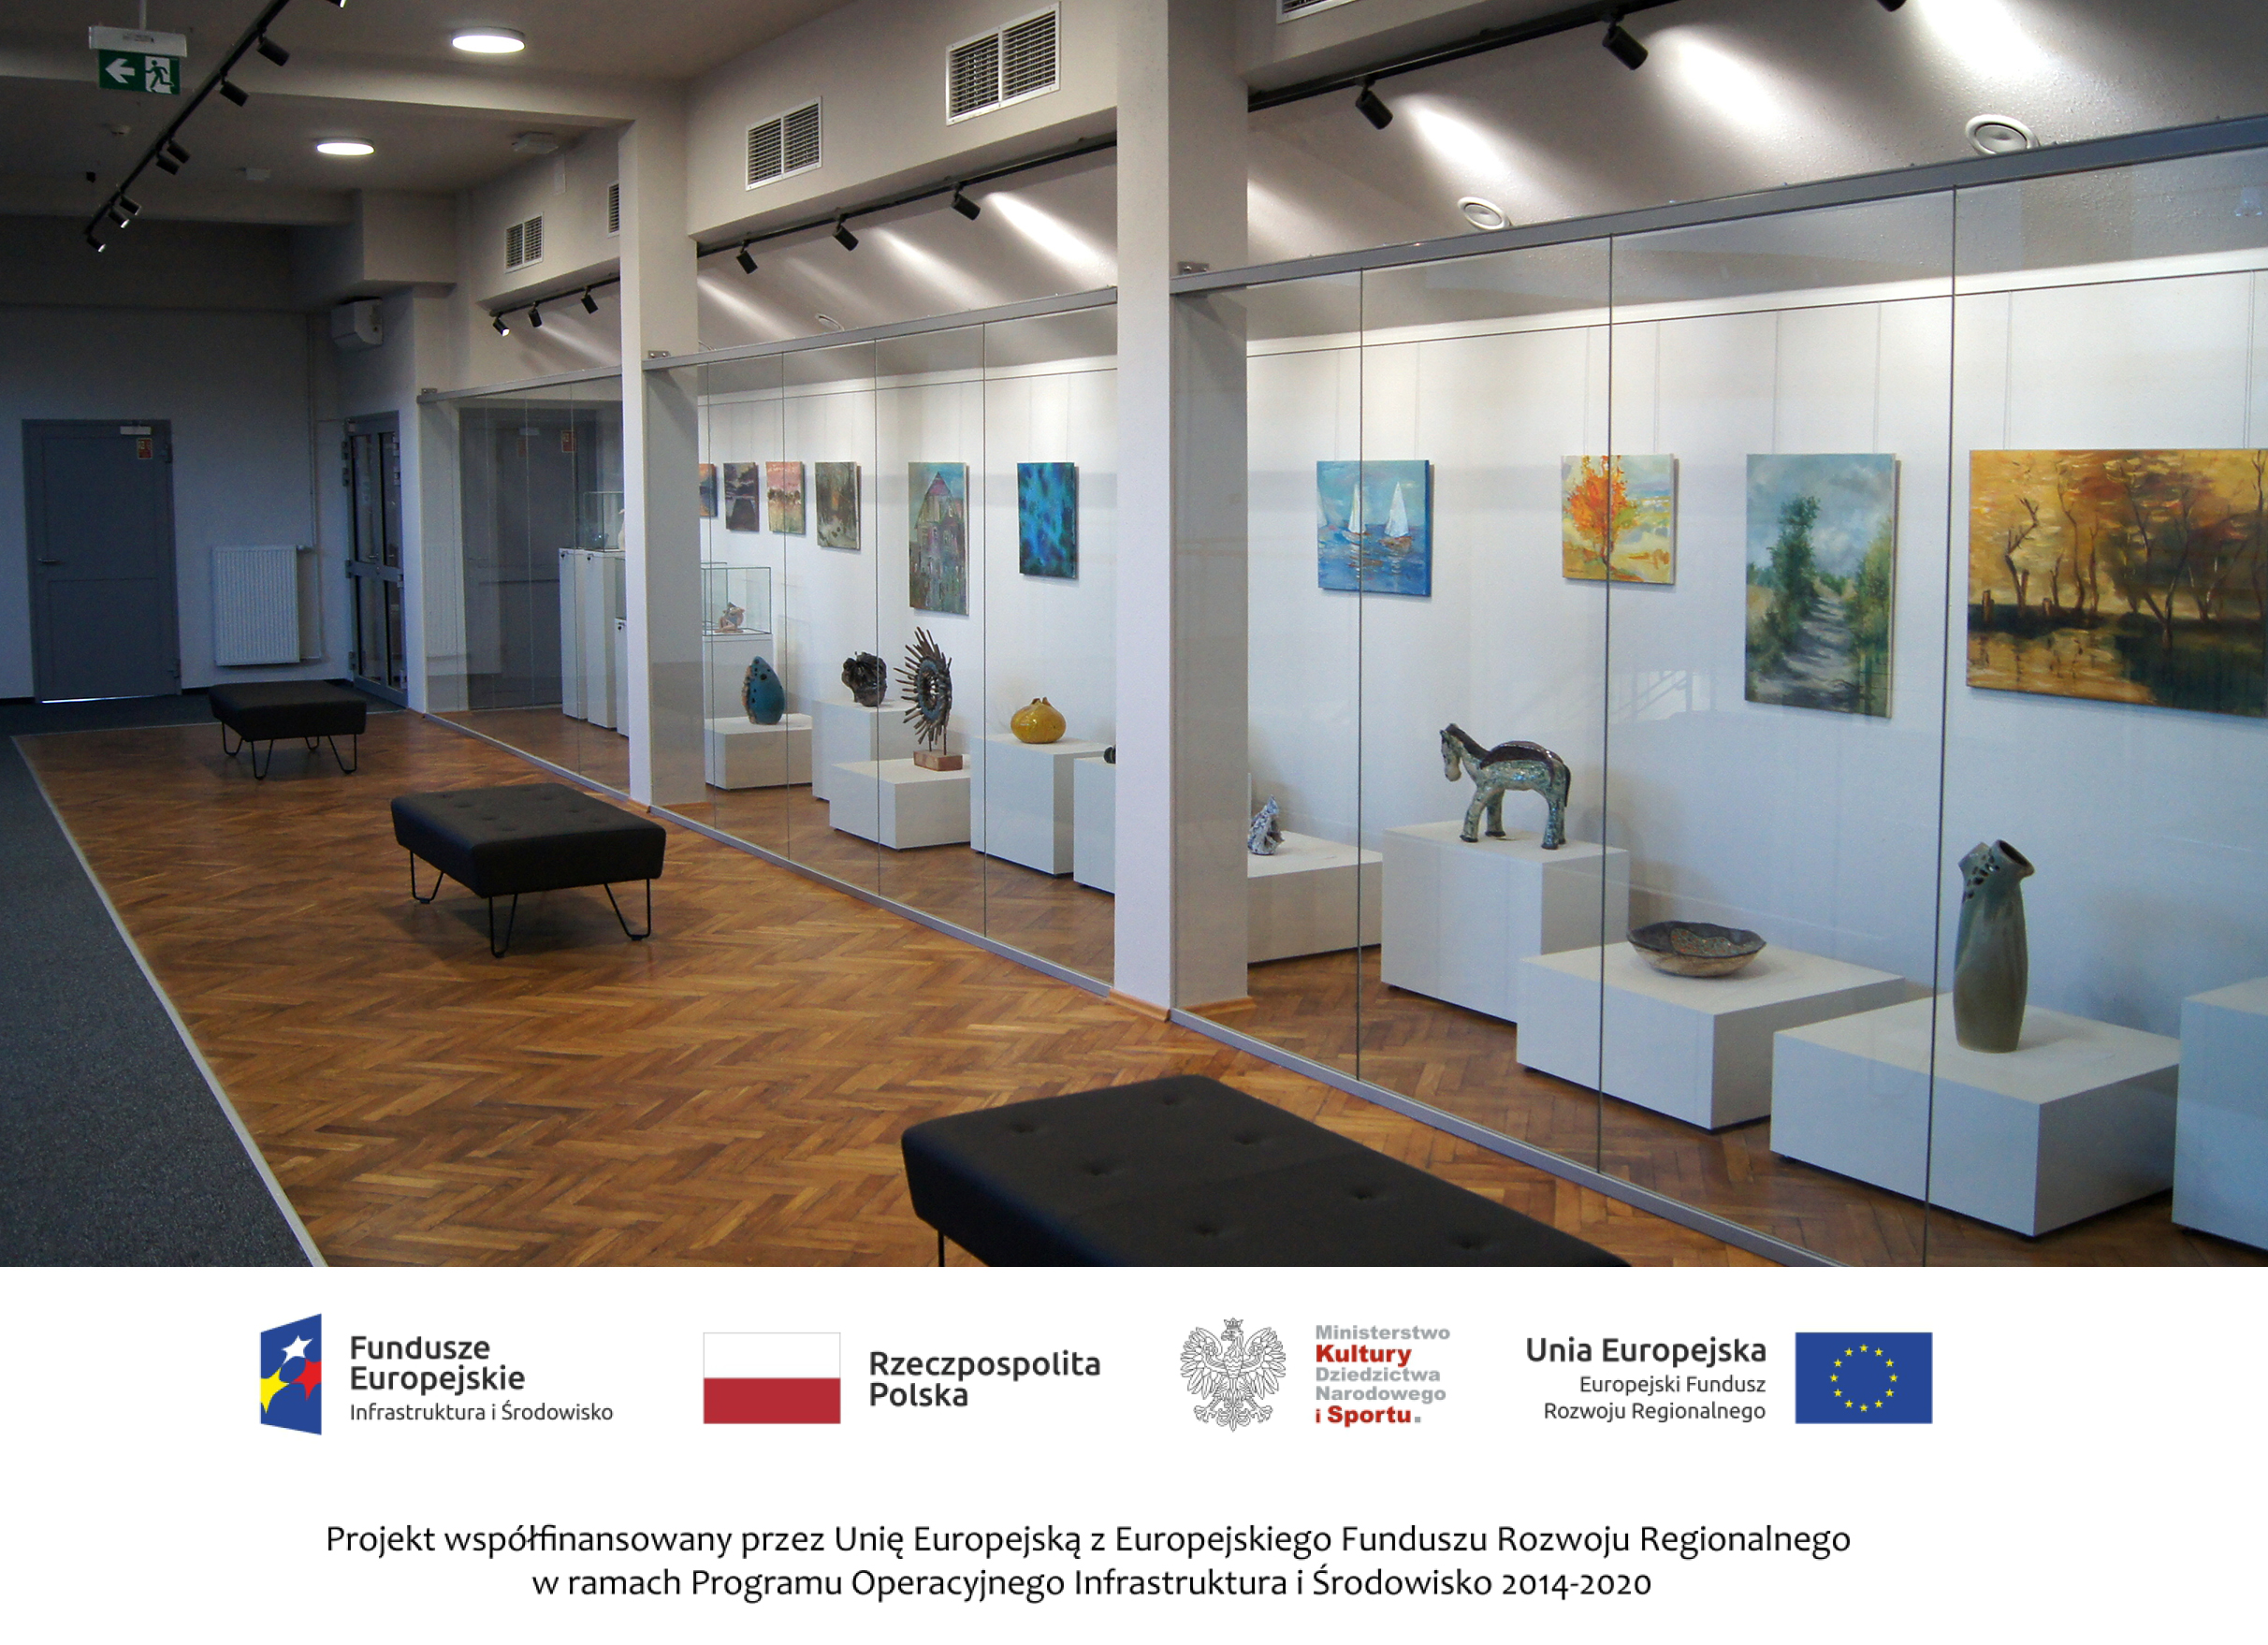 Jedna z sal w Centrum Spotkań Europejskich "Światowid". Po prawej stronie, za szkłem obrazy oraz dzieła artystów 